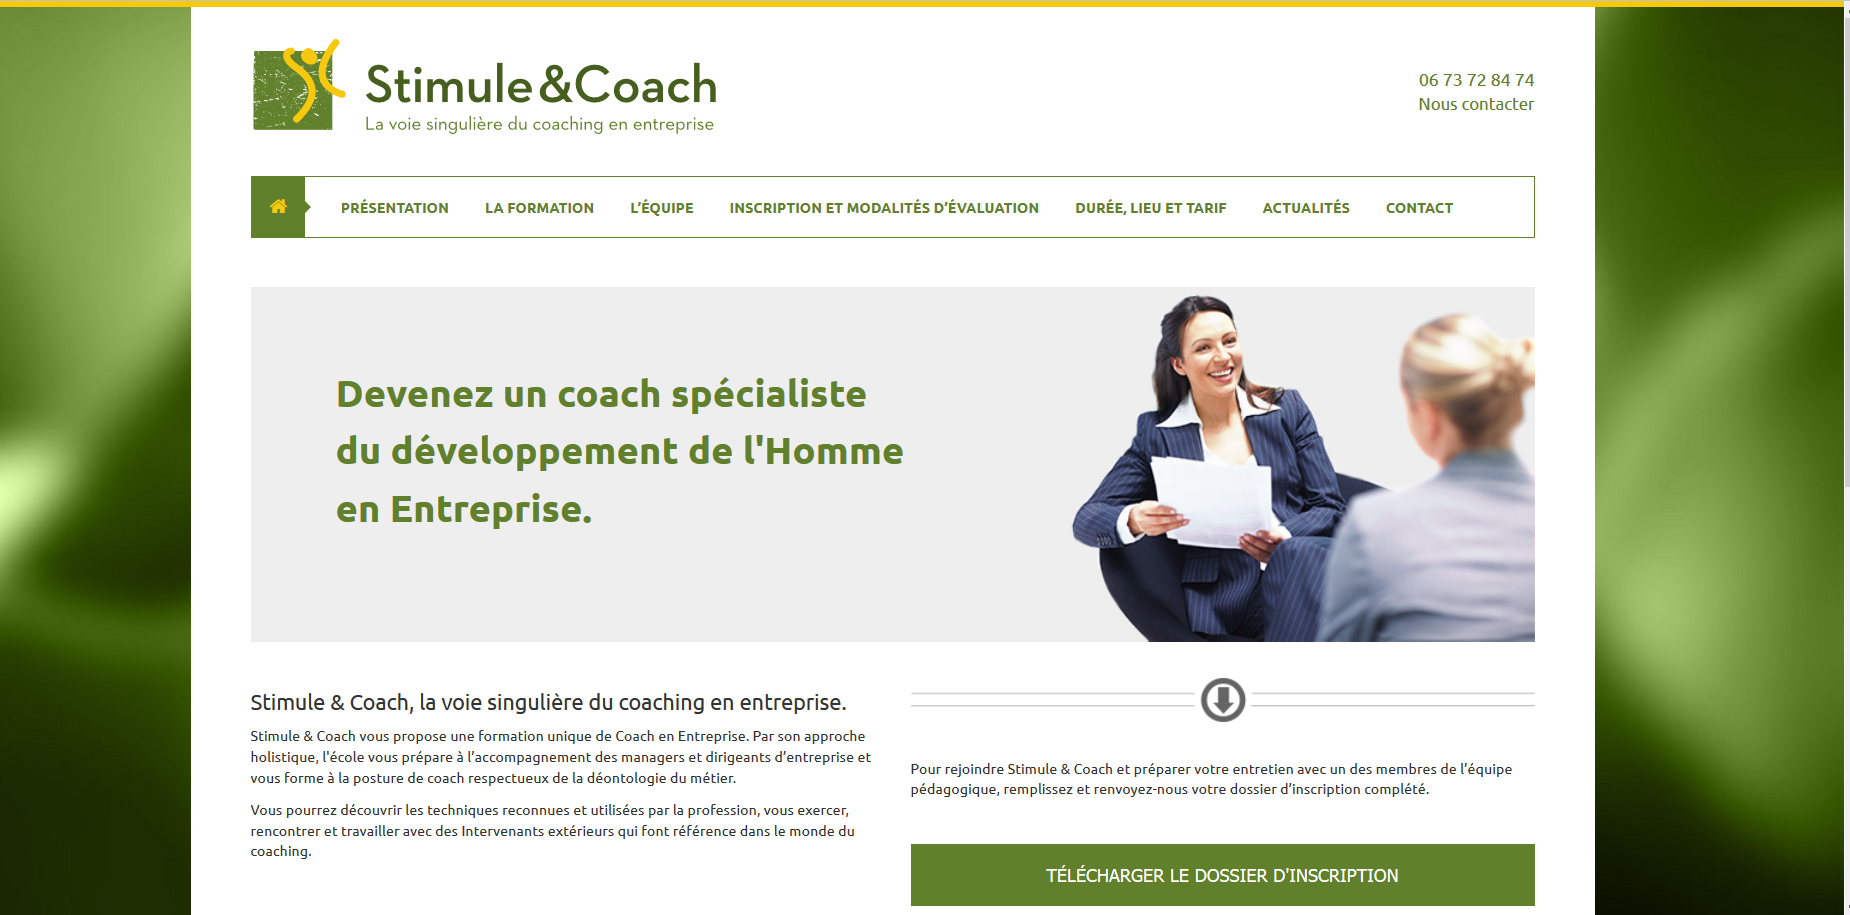 Site stimule and coach